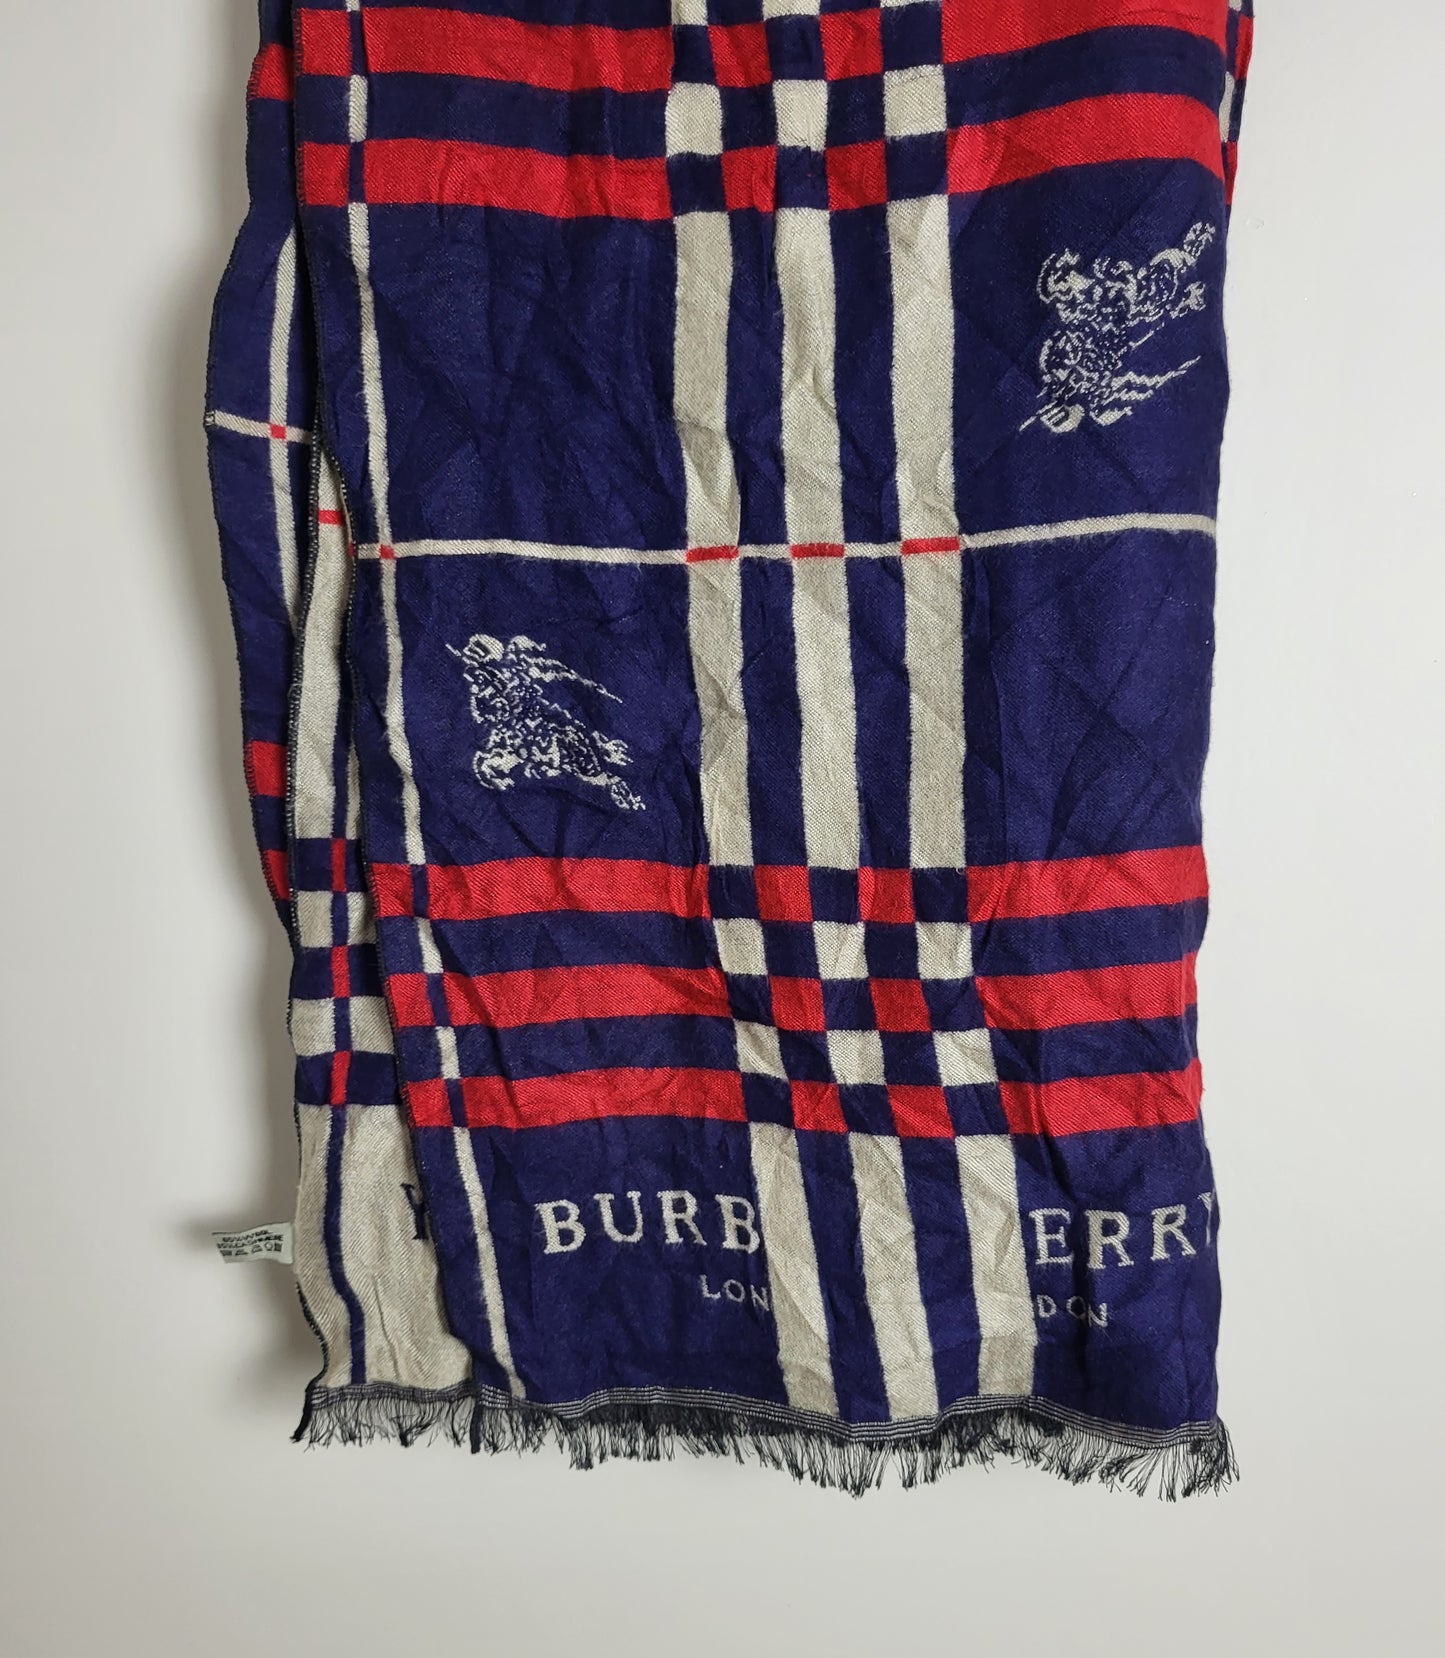 Burberry - Schal / Tuch - Dunkelblau Tartan - Wolle / Kaschmir - 180 x 65